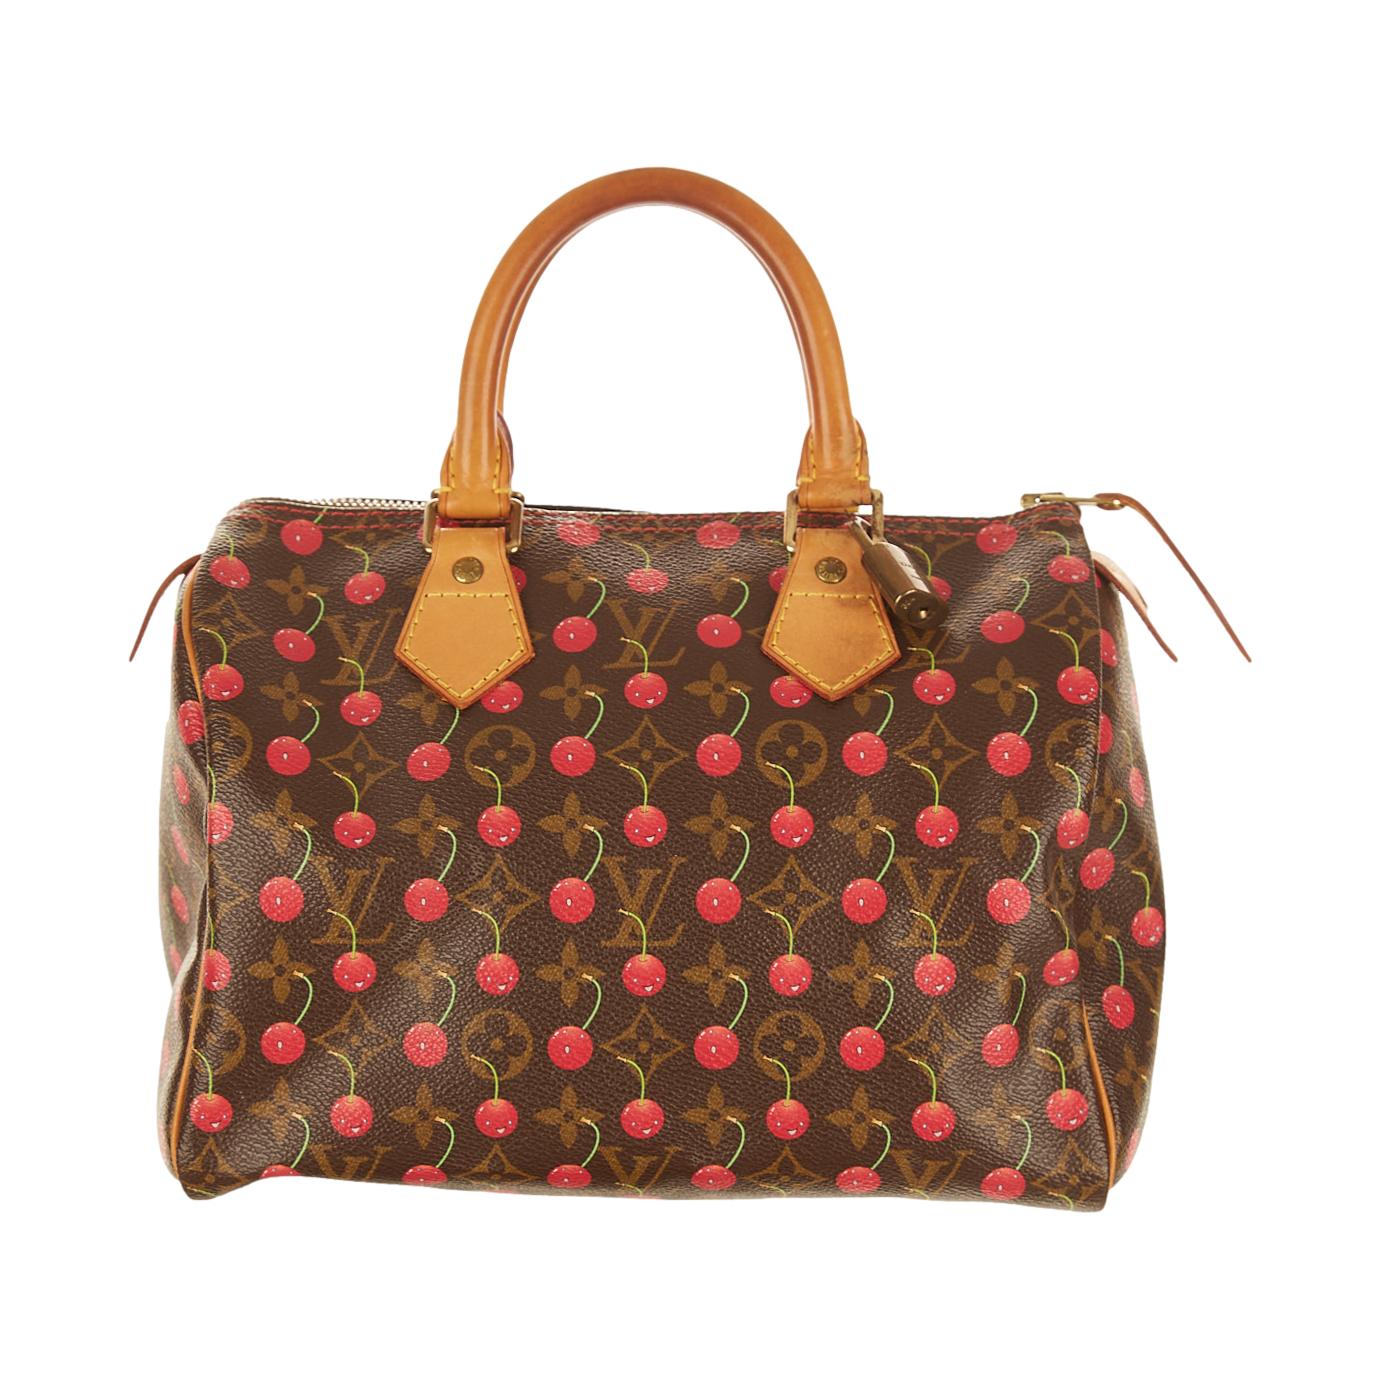 FWRD Renew Louis Vuitton Monogram Cherry Speedy 25 Bag in Brown